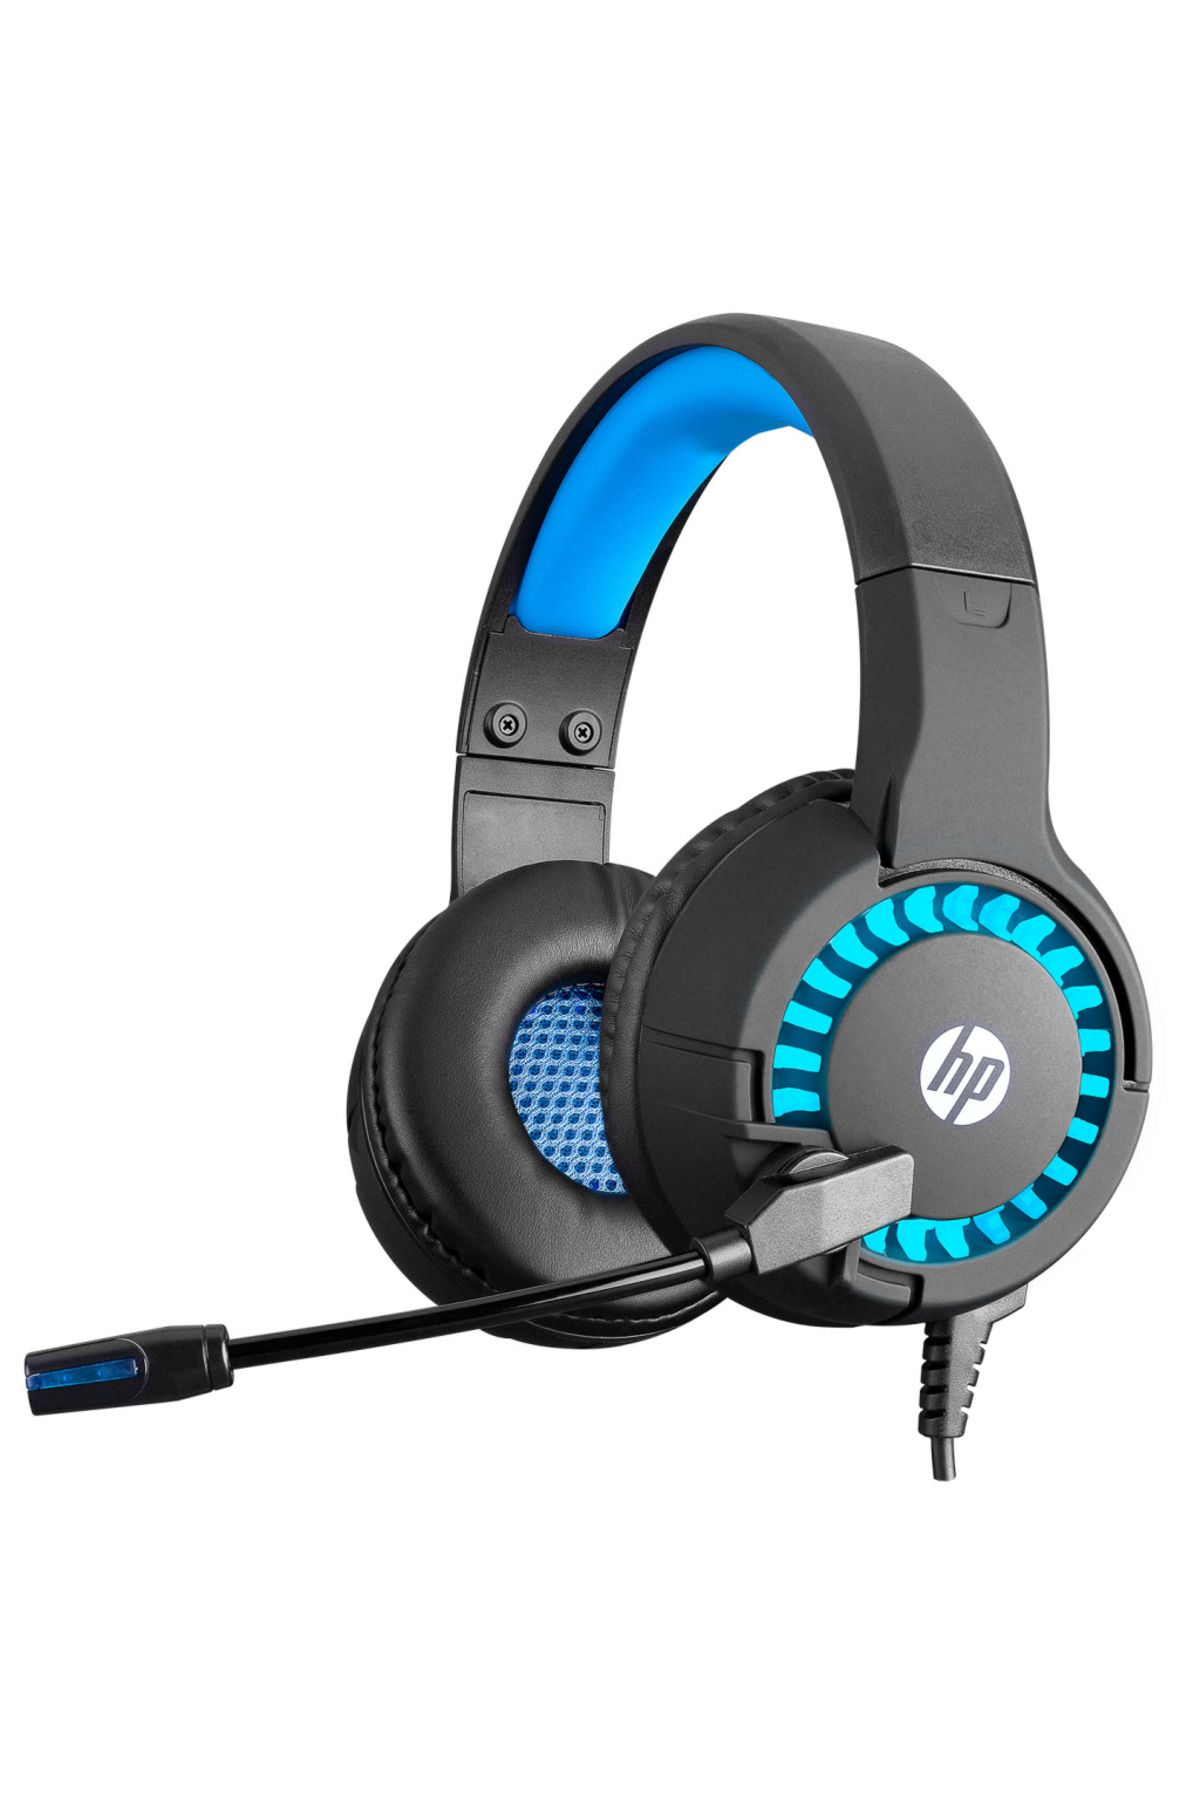 SCOPE HP DHE-8011U, Mavi LED Aydınlatmalı, Mikrofonlu  Gaming Kulaklık, Siyah